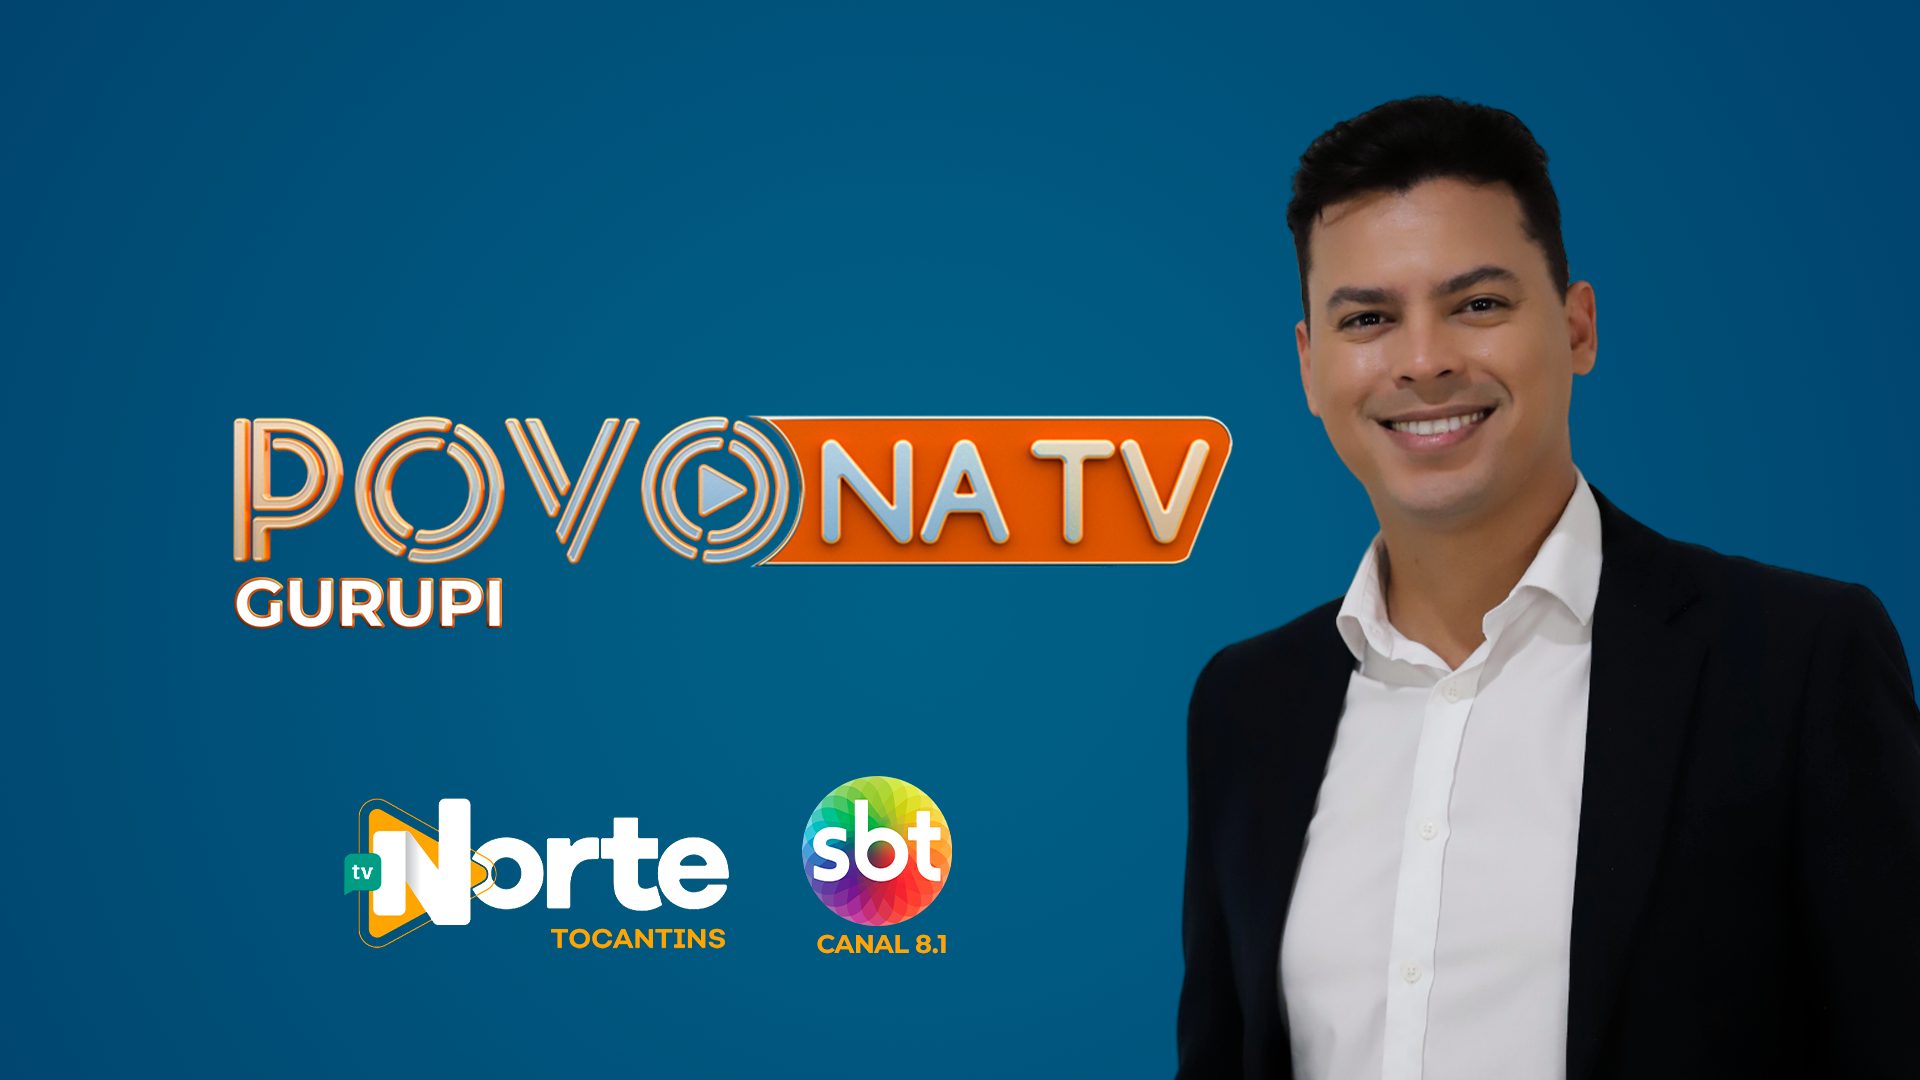 TV Norte Tocantins anuncia o retorno do programa Povo na TV, Gurupi